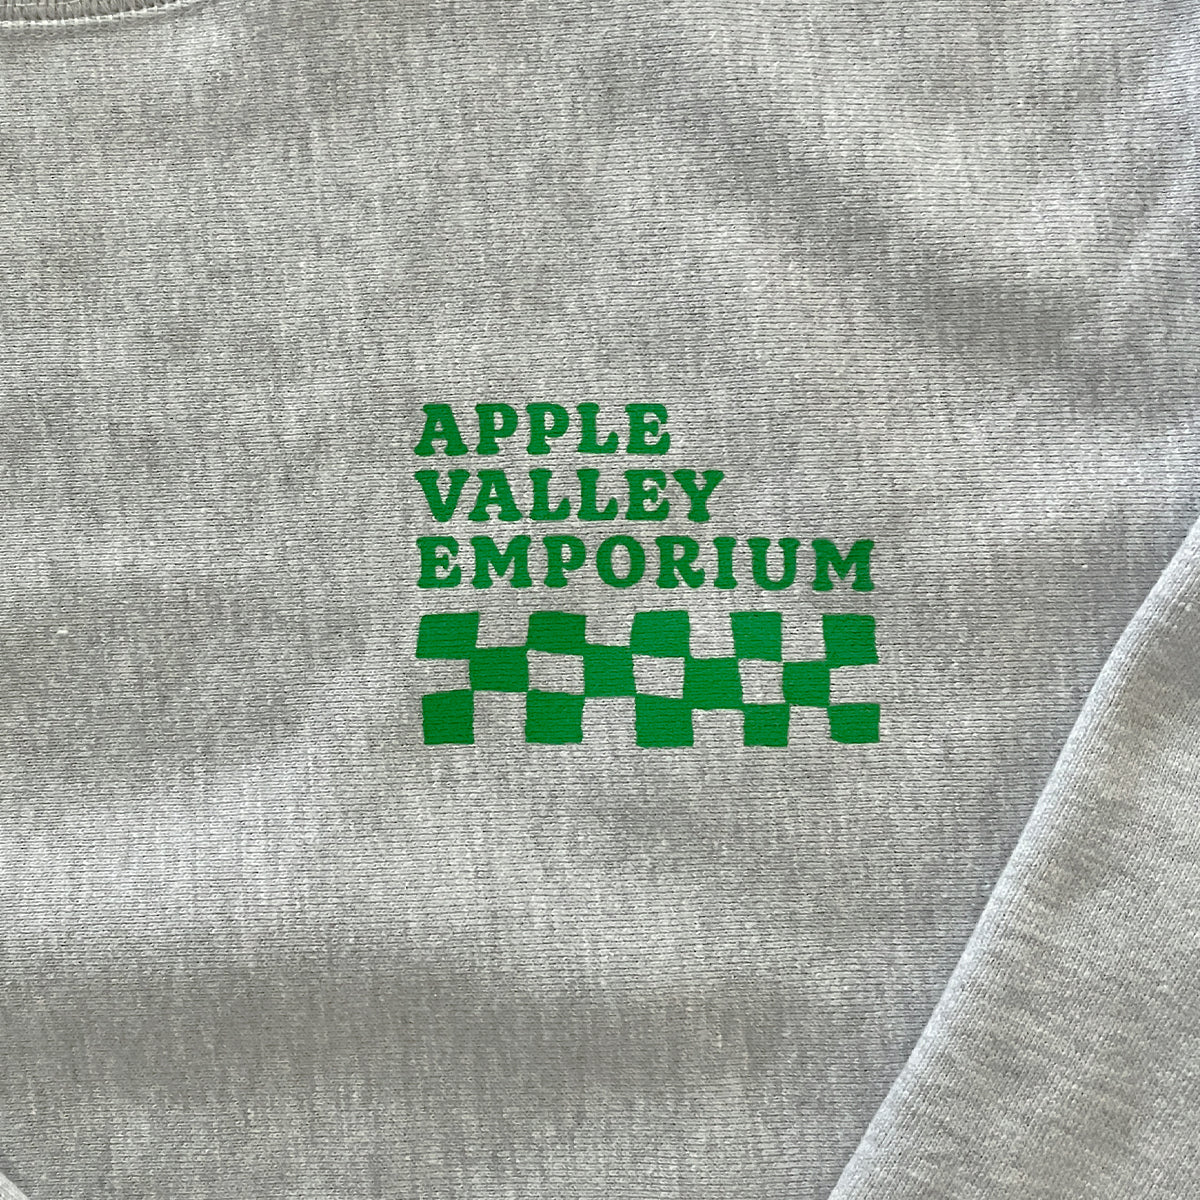 AVE Green Checkered Unisex Crewneck Sweatshirt - Apple Valley Emporium